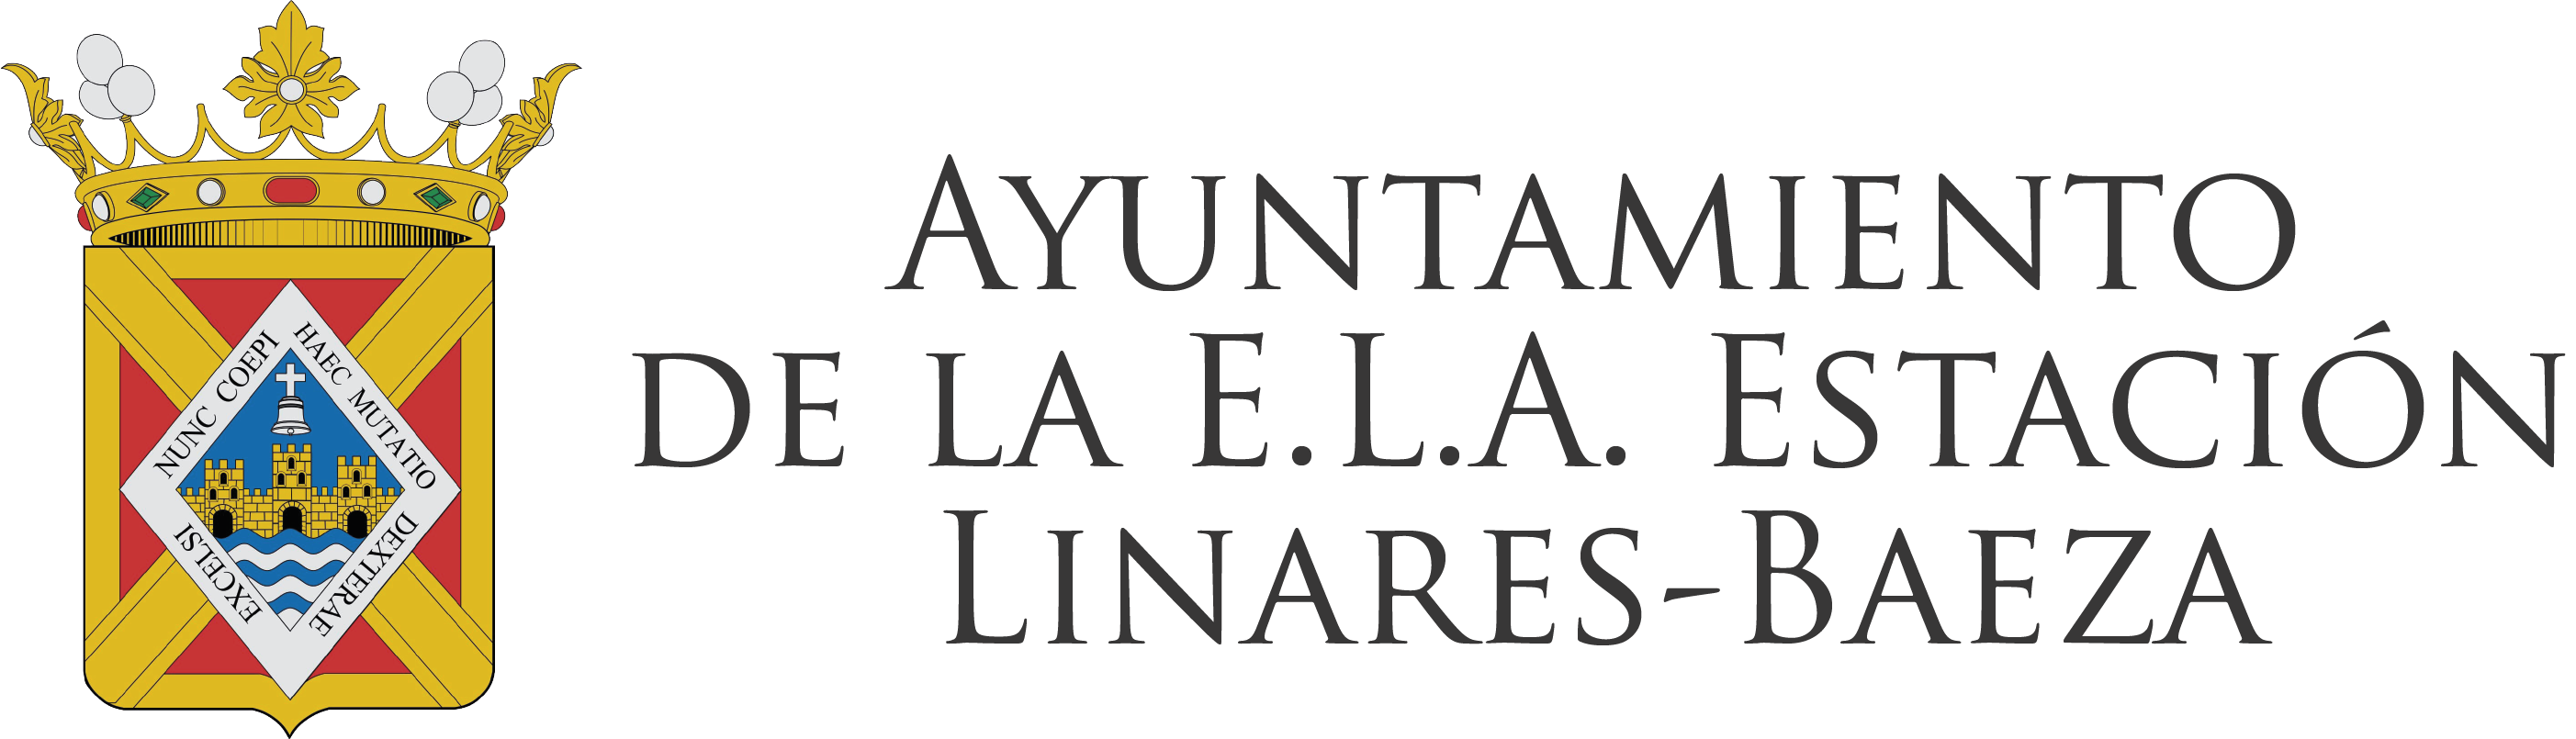 Ayuntamiento de la ELA Estación de Linares-Baeza